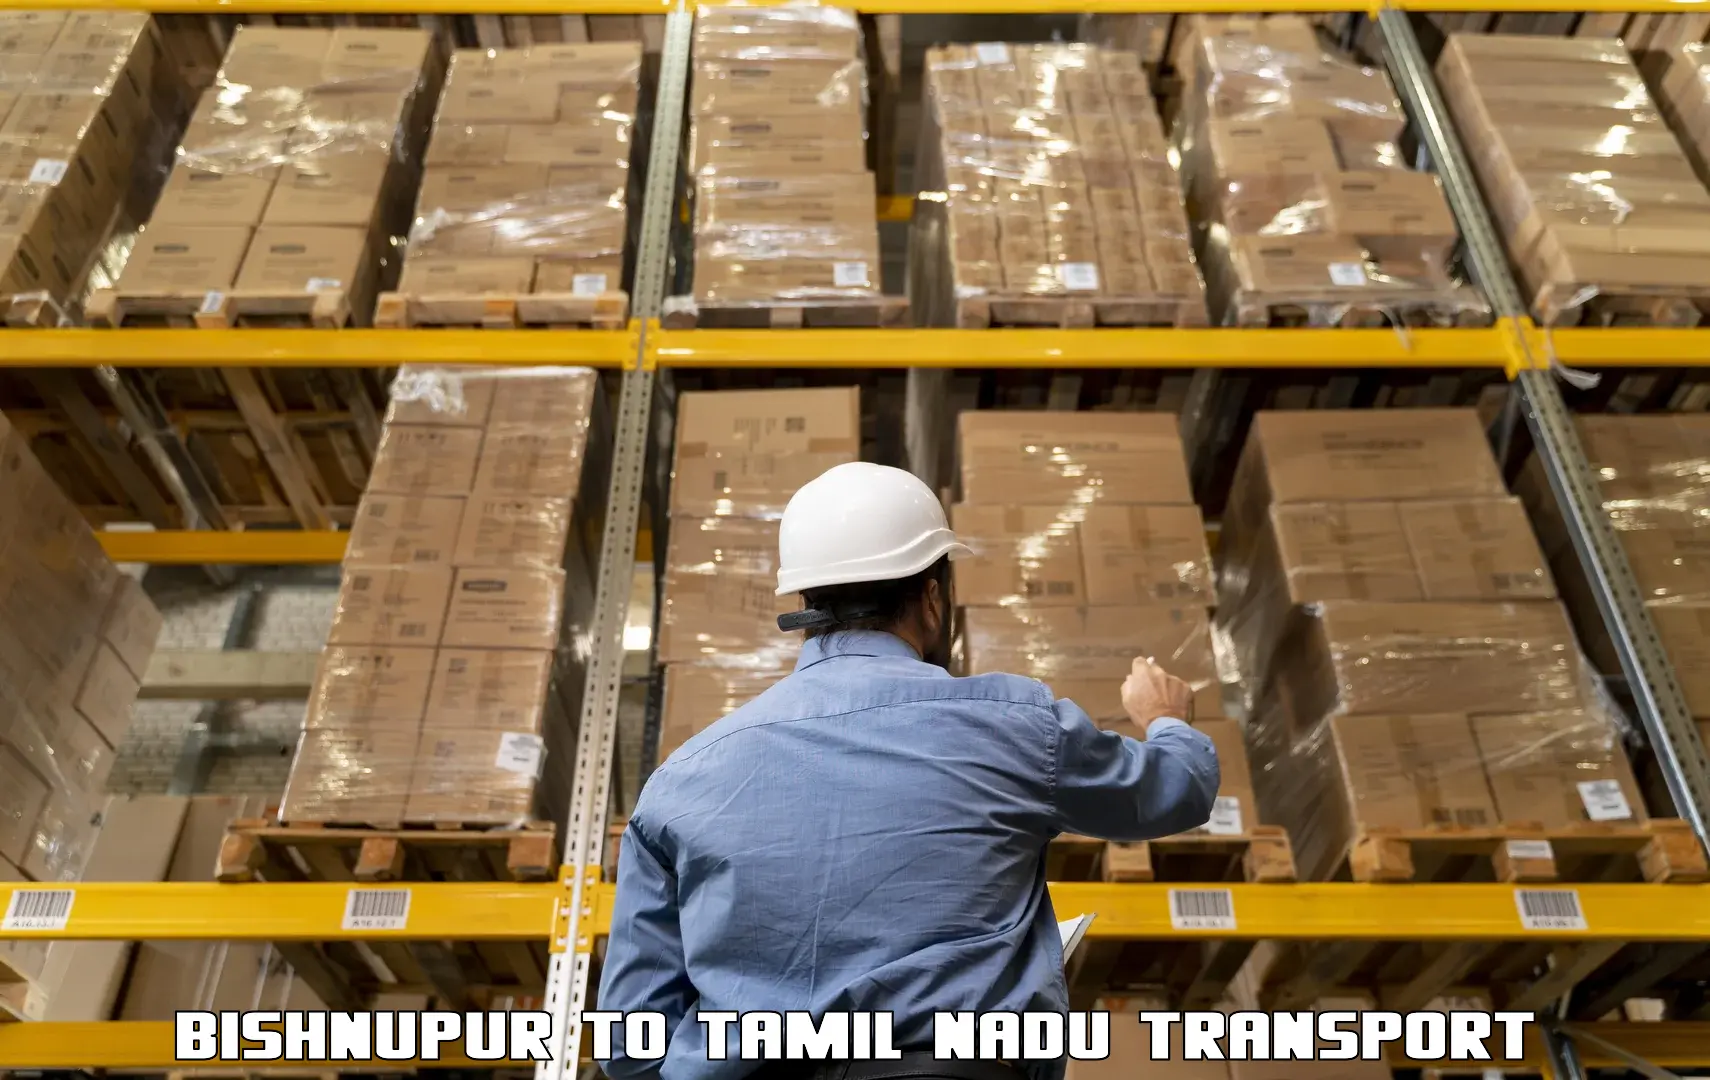 Furniture transport service Bishnupur to Ennore Port Chennai